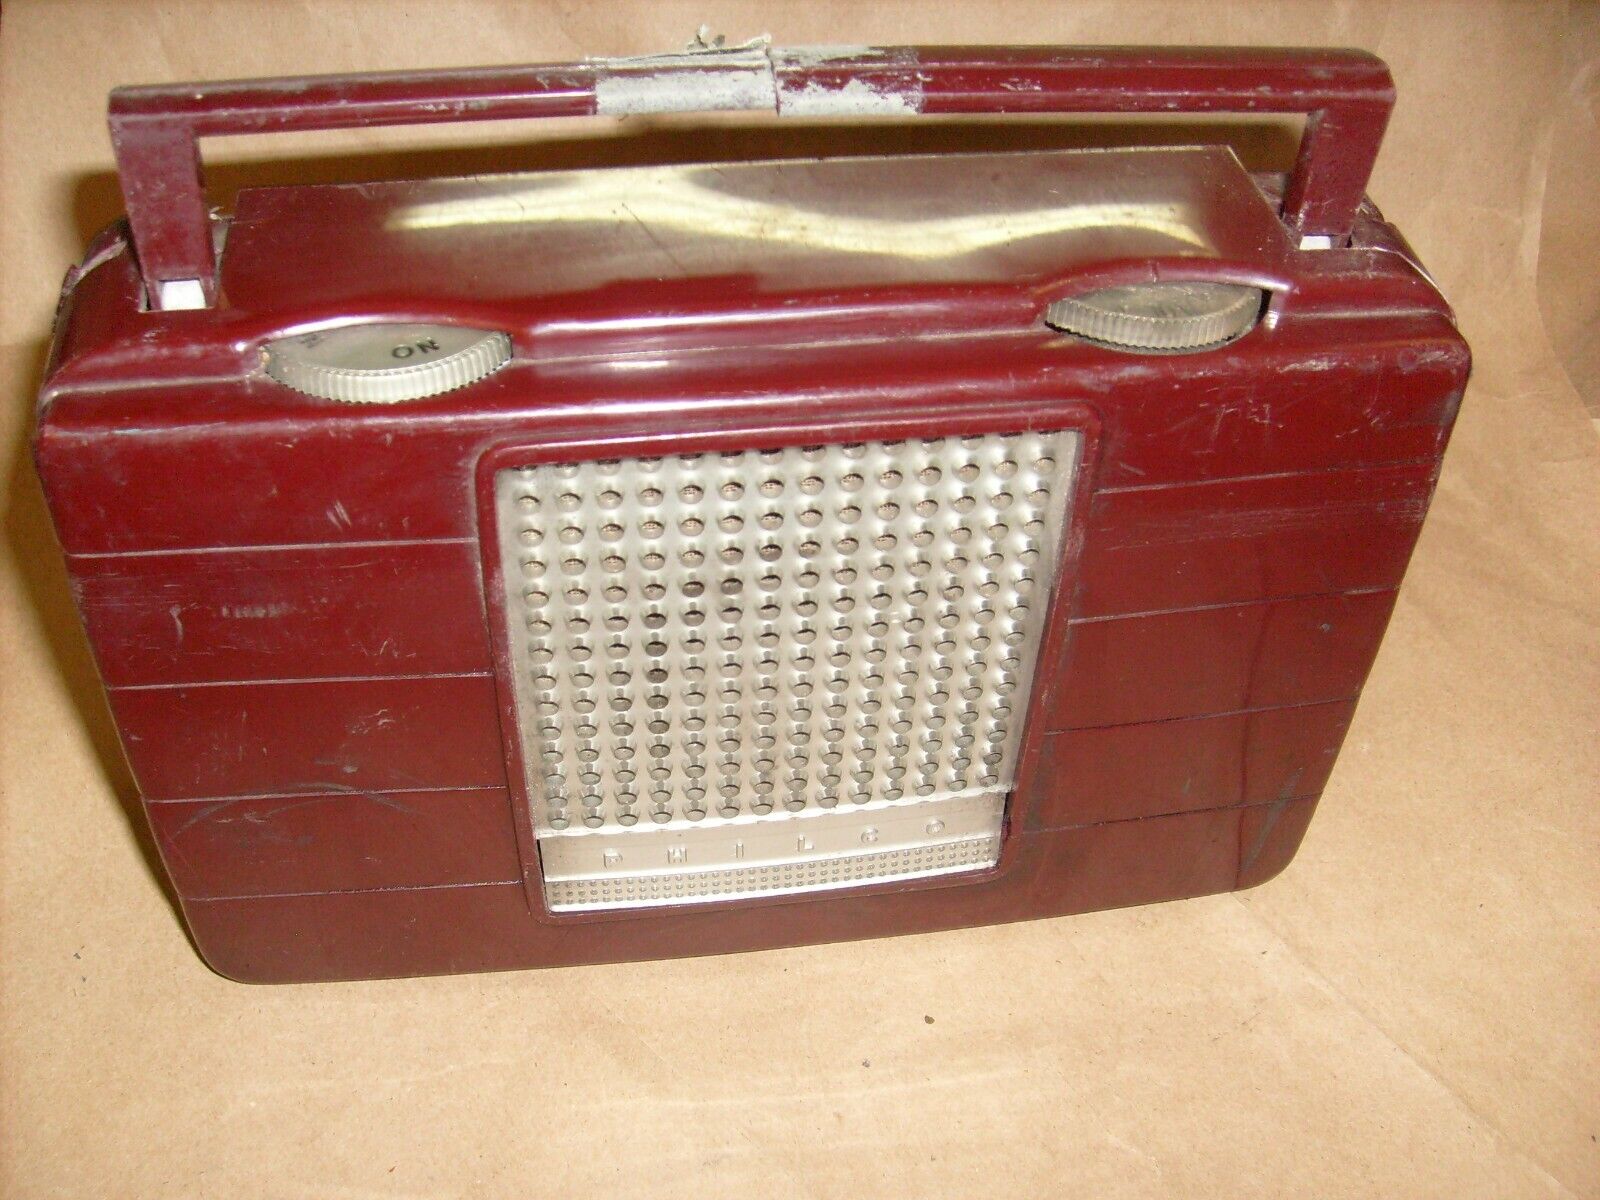 1954 PHILCO TUBE  RADIO model B649 for  Parts Repair